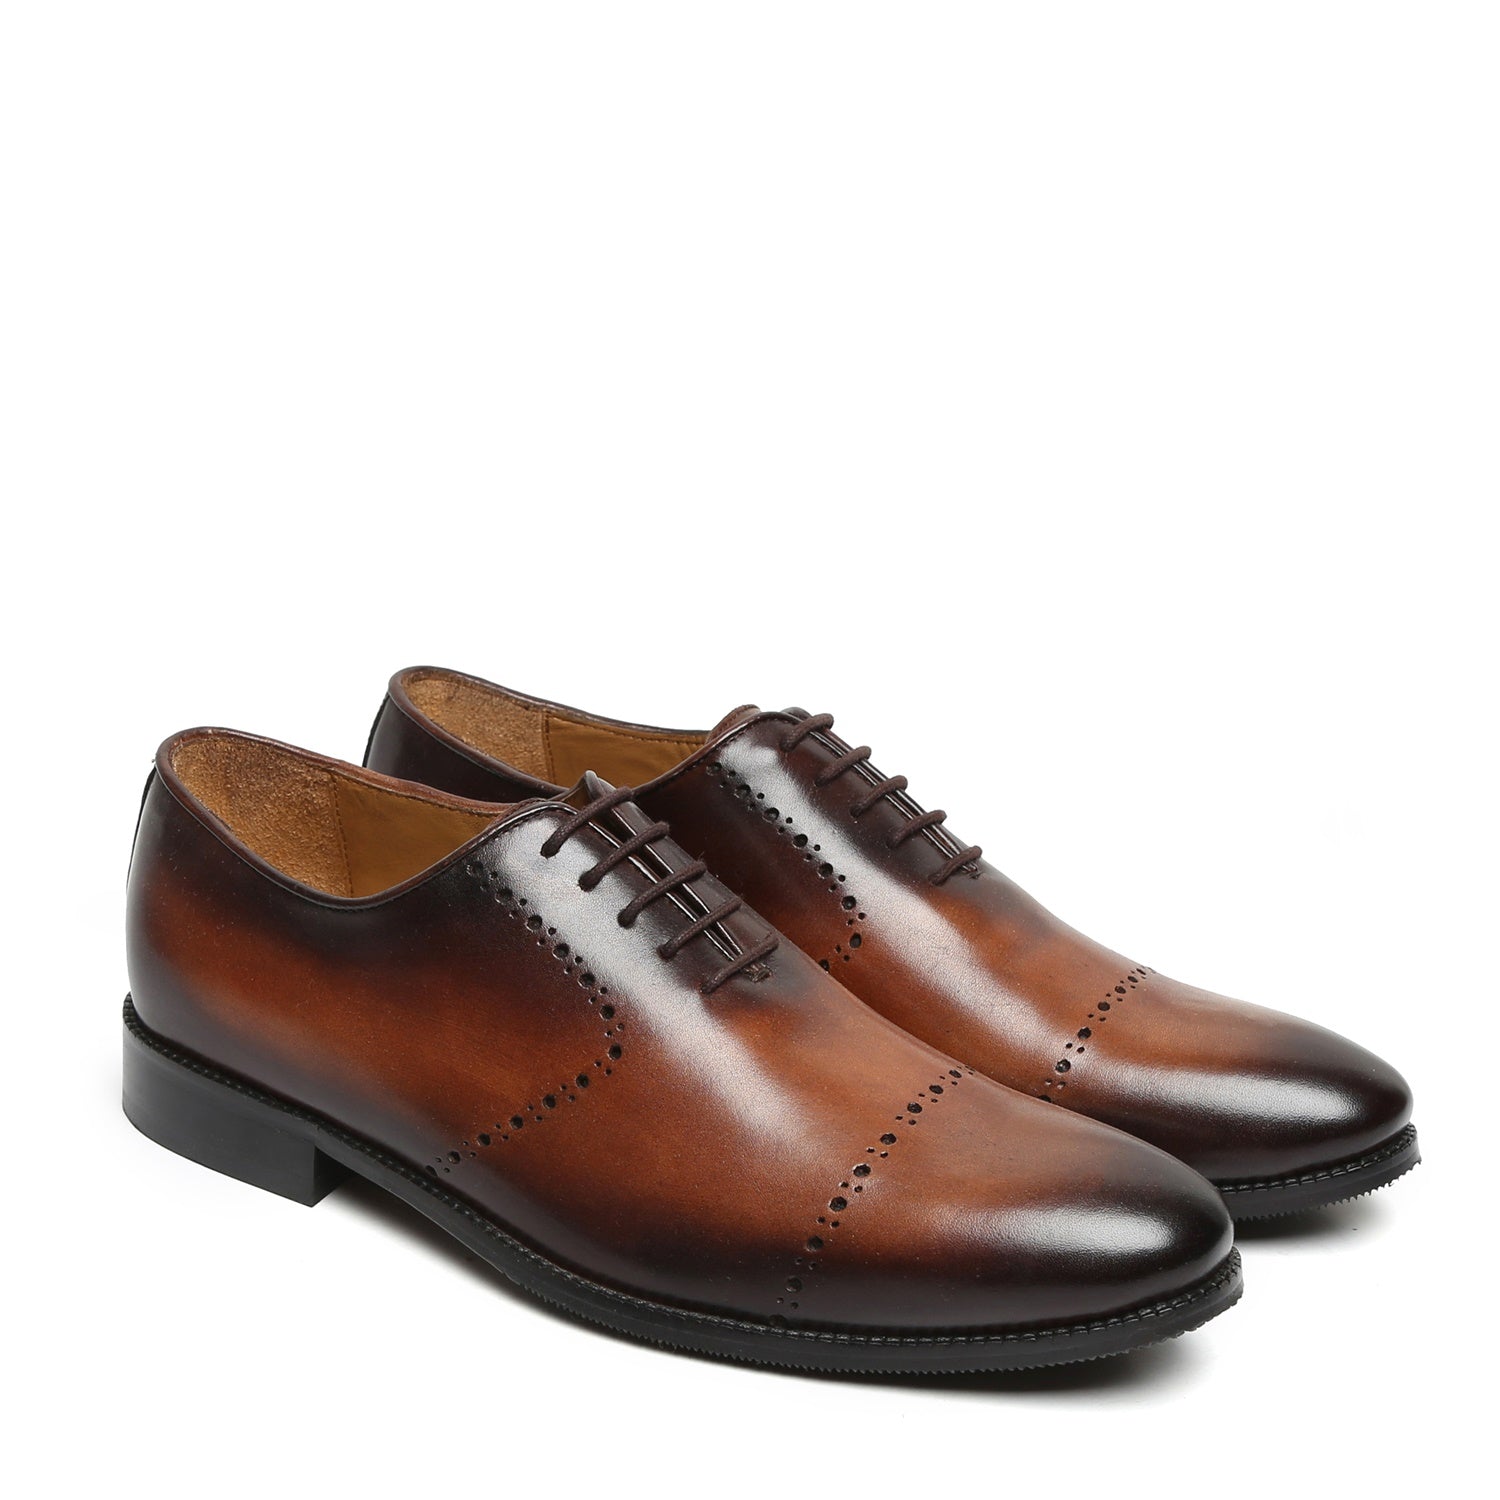 Tan Burnished Leather Quarter Brogue Oxford Formal Shoes By Brune & Bareskin